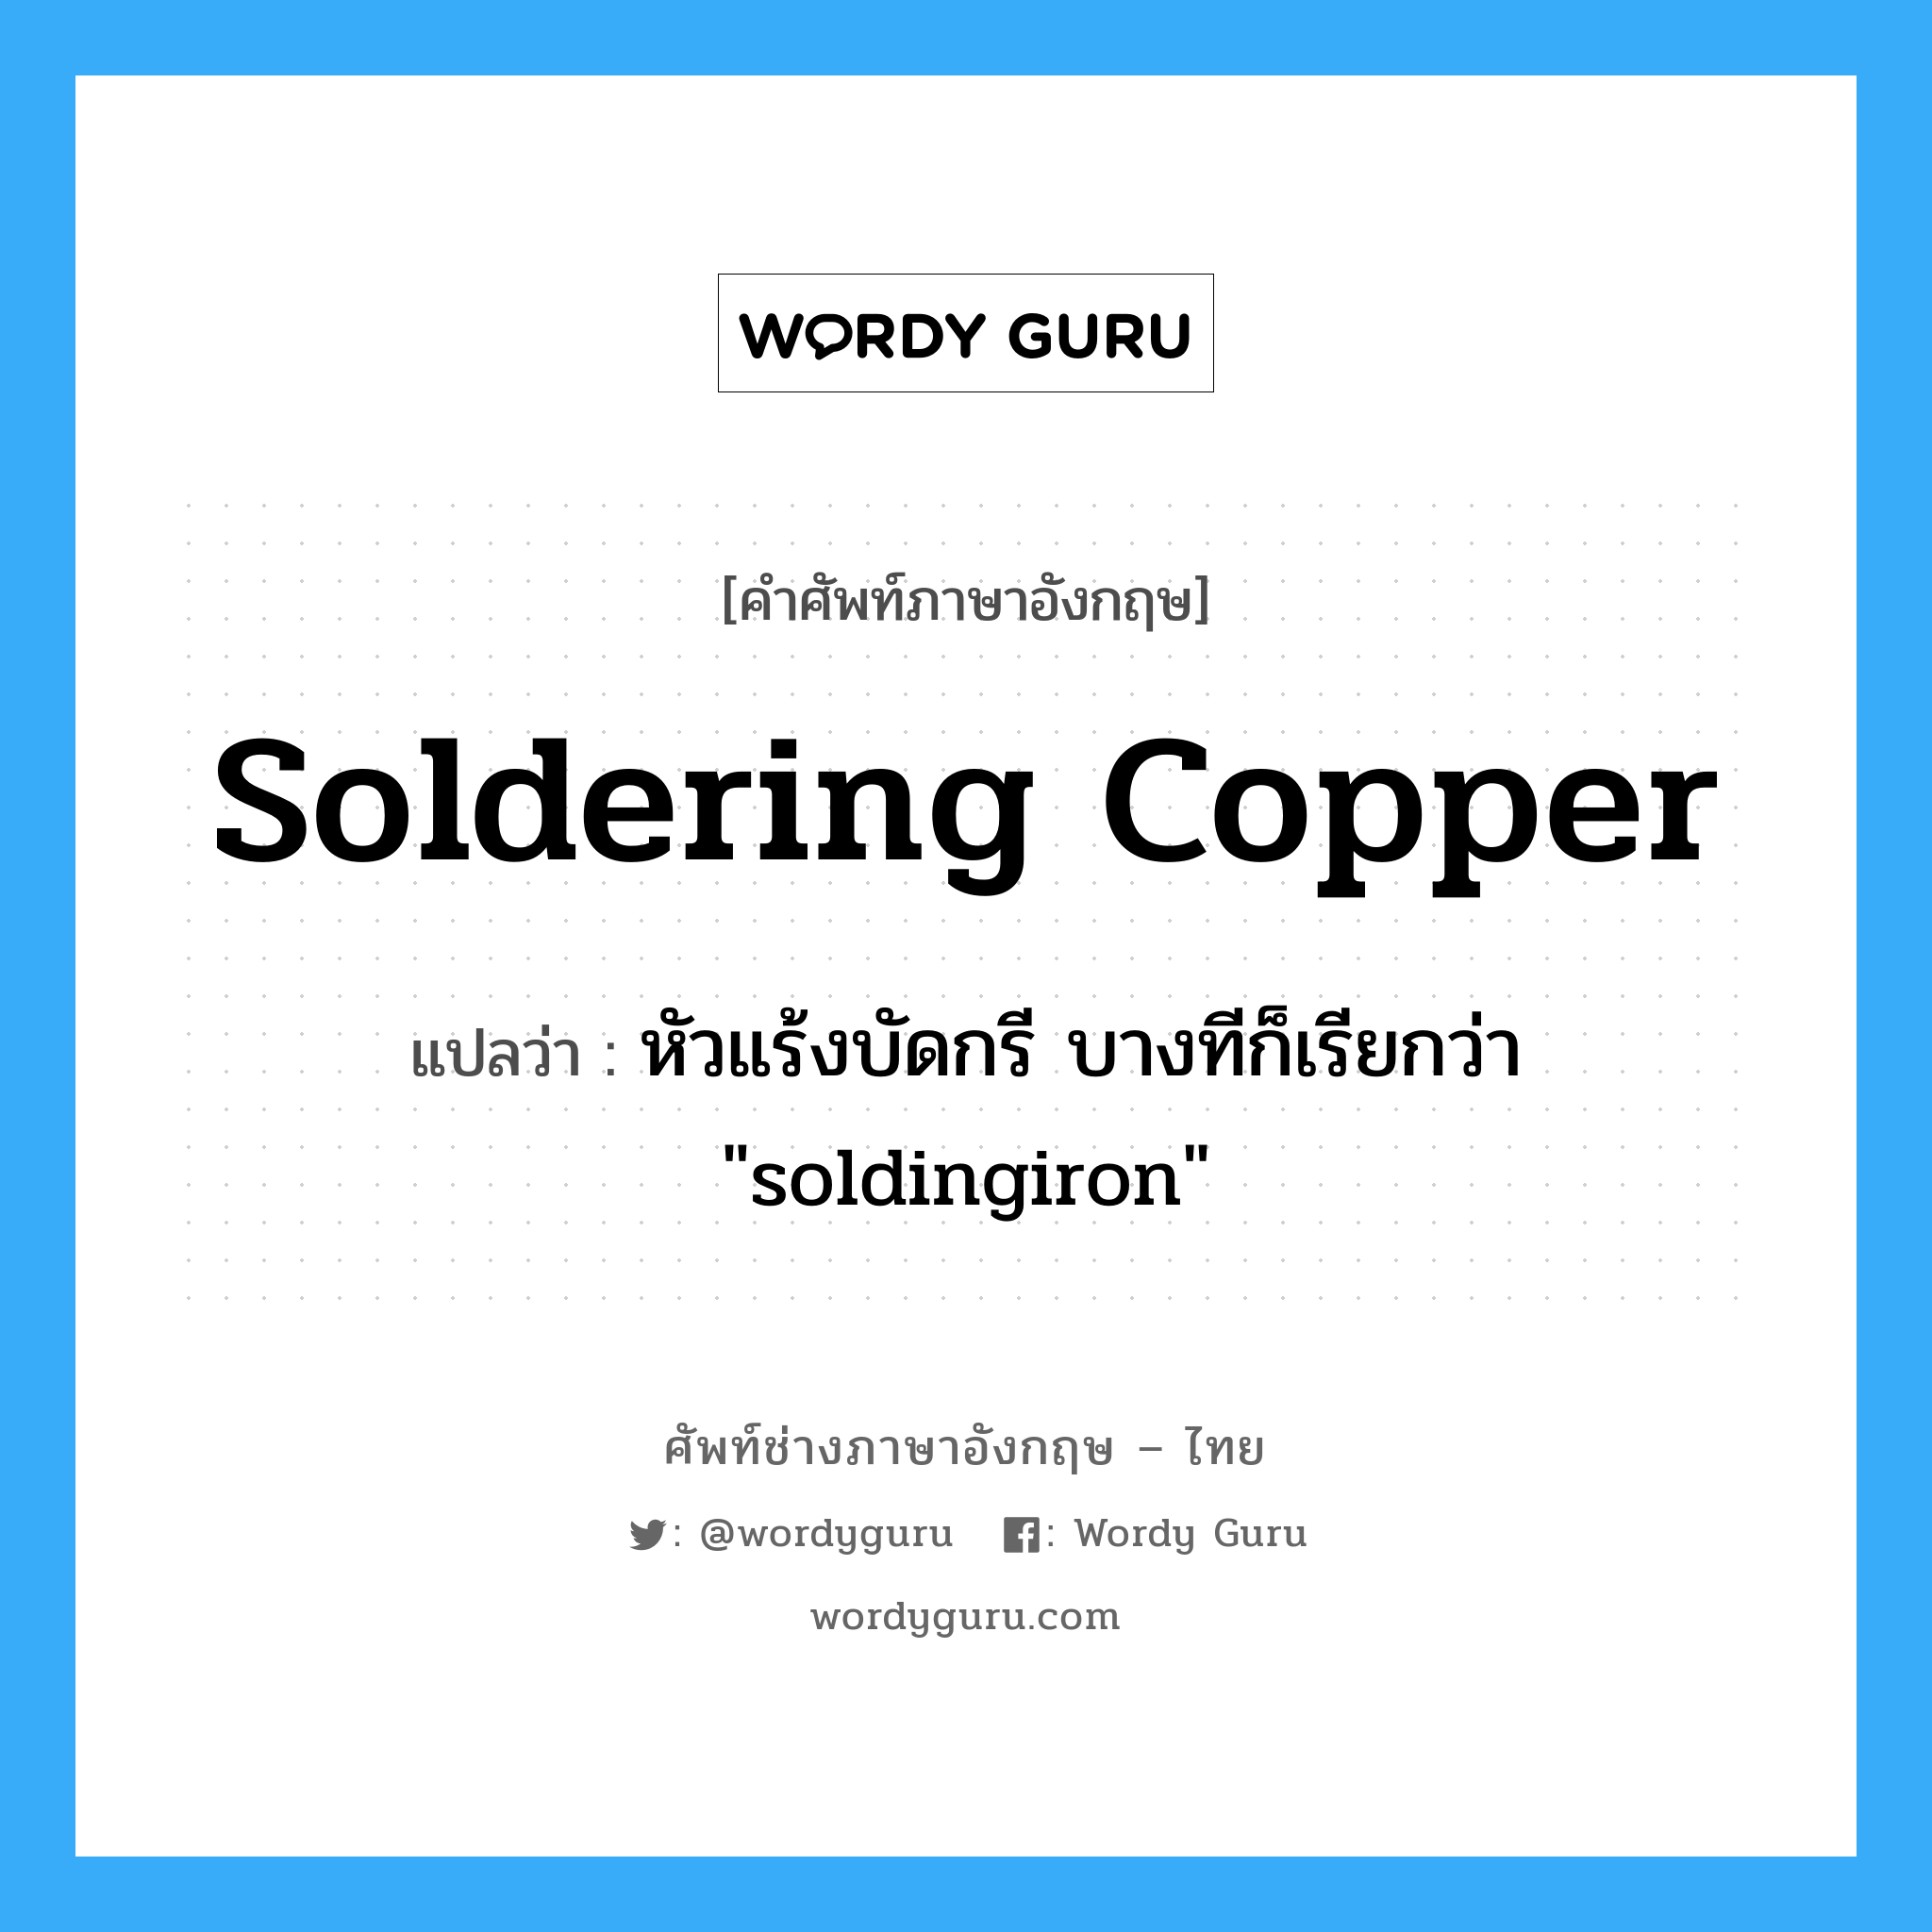 หัวแร้งบัดกรี บางทีก็เรียกว่า "soldingiron" ภาษาอังกฤษ?, คำศัพท์ช่างภาษาอังกฤษ - ไทย หัวแร้งบัดกรี บางทีก็เรียกว่า "soldingiron" คำศัพท์ภาษาอังกฤษ หัวแร้งบัดกรี บางทีก็เรียกว่า "soldingiron" แปลว่า soldering copper